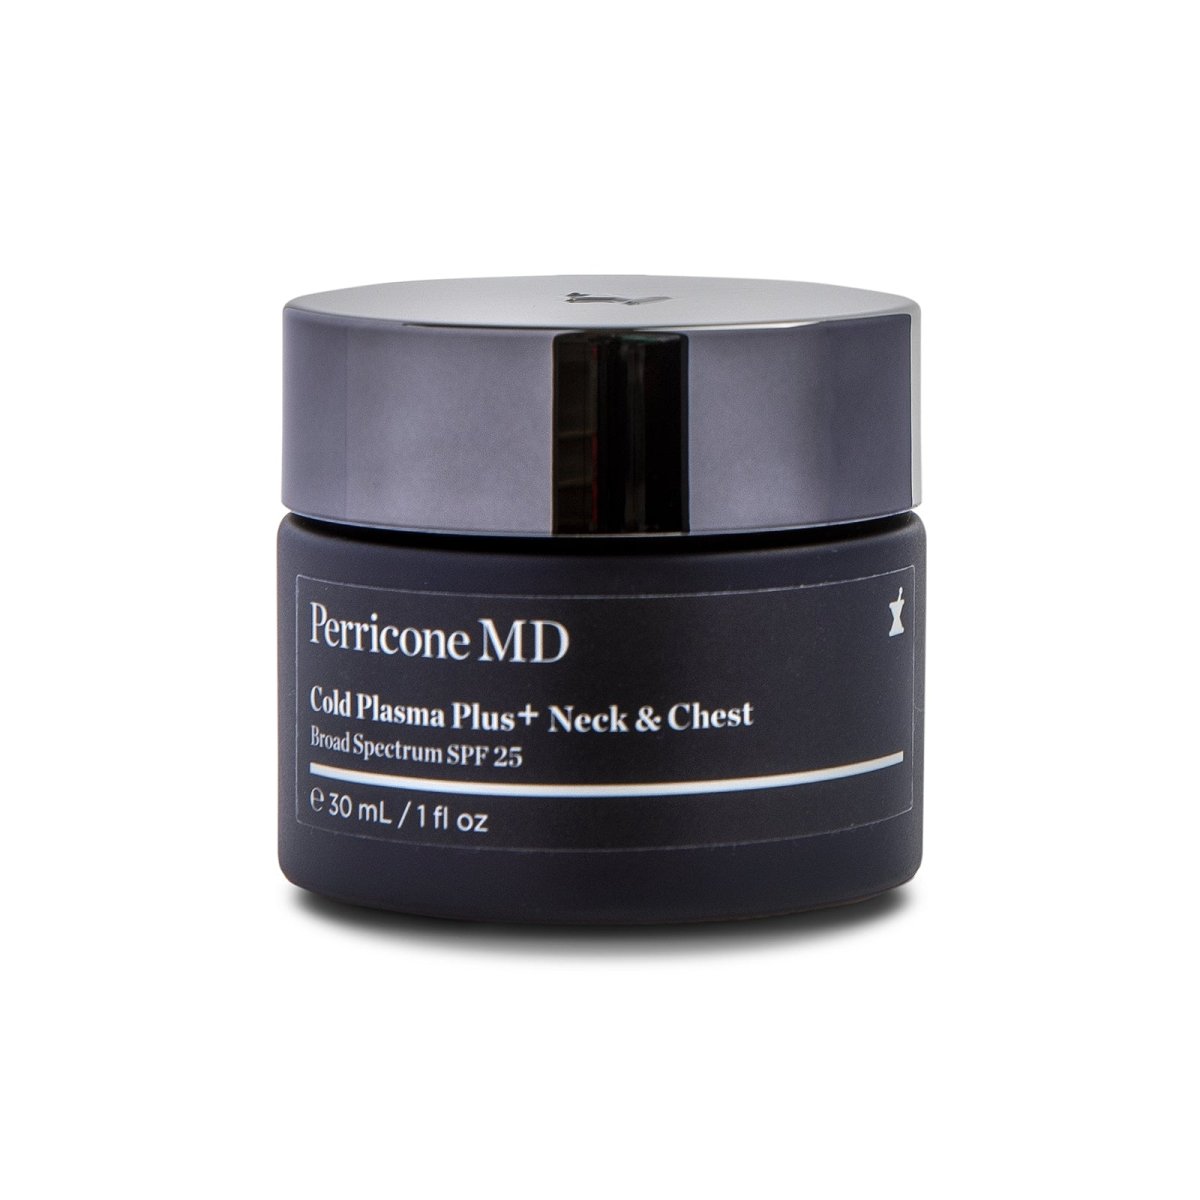 Perricone MD Cold Plasma Plus+ Neck & Chest Broad Spectrum SPF 25 - SkincareEssentials